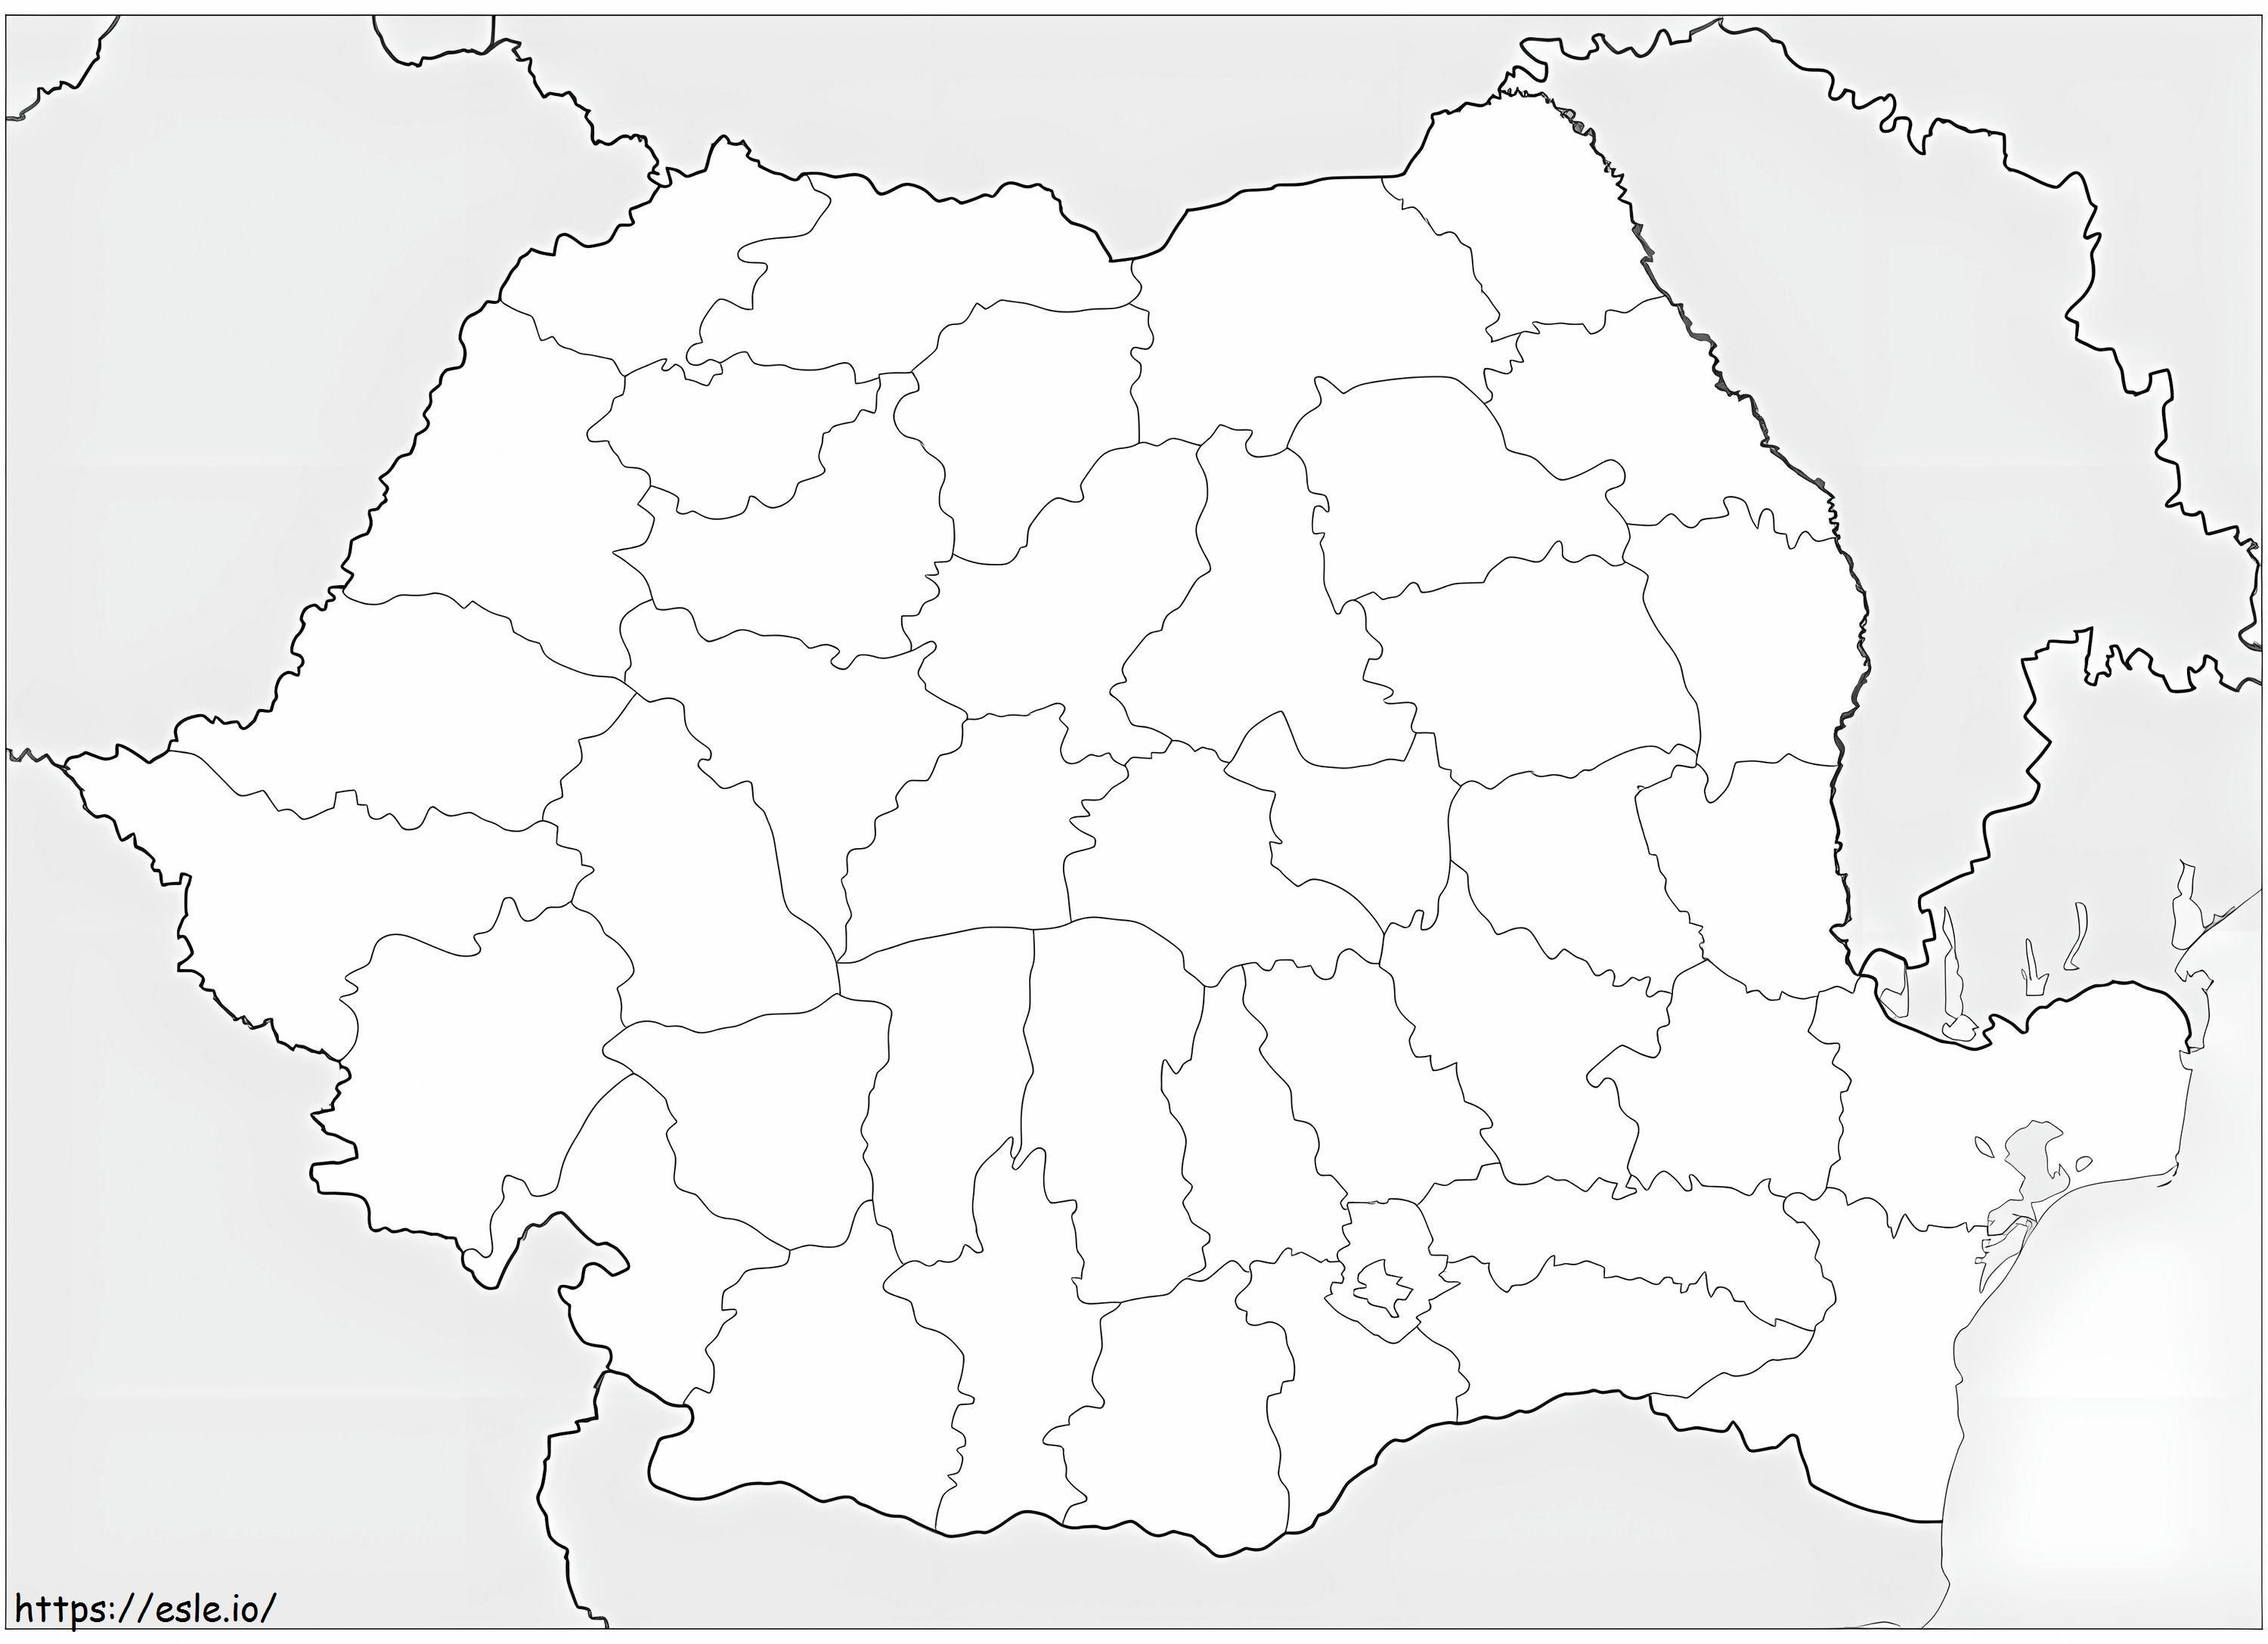 Mapa da Roménia para colorir